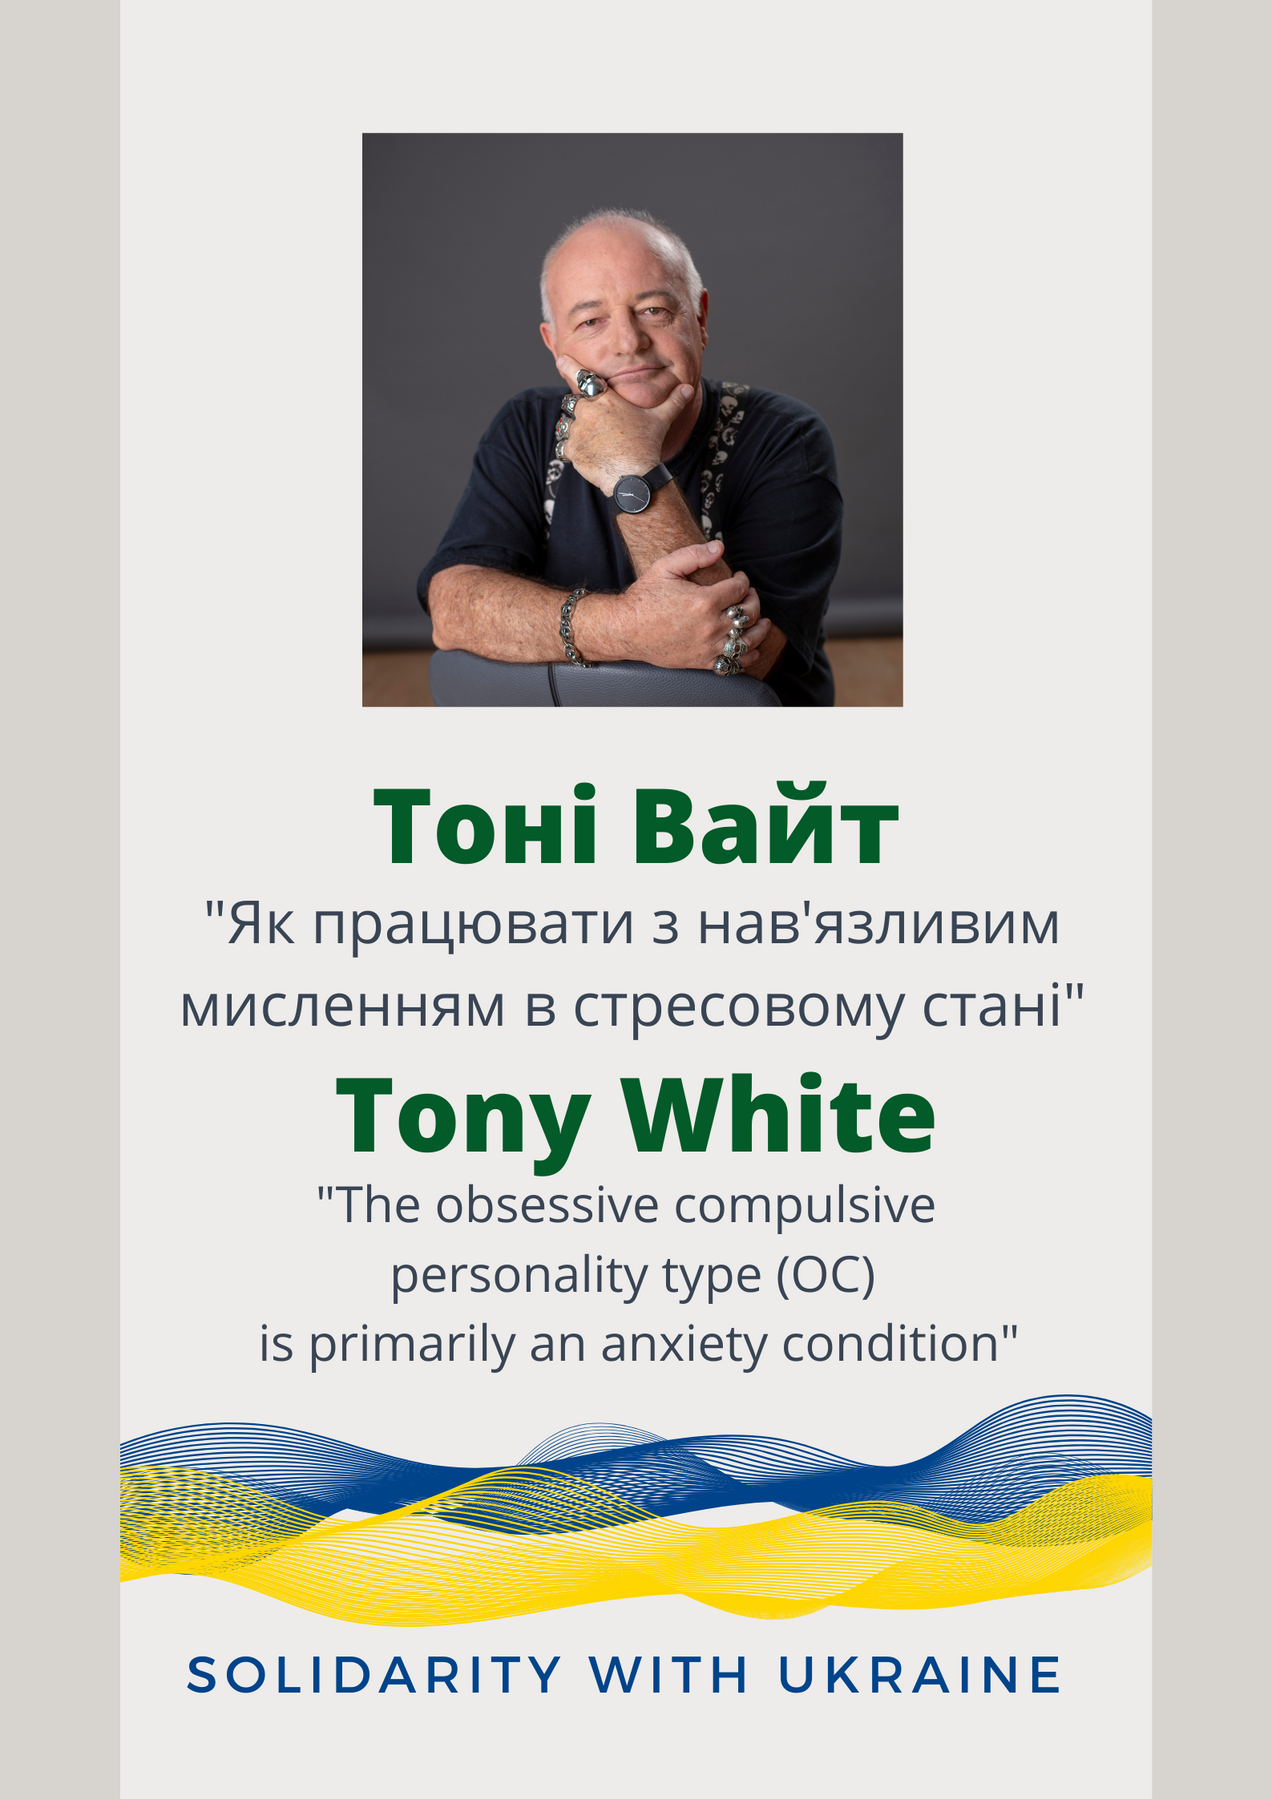 Тоні Вайт, Австралія в підтримку українських колег. Воркшоп "Як працювати з нав'язливим мисленням в стресовому стані". Обсесивно-компульсивне мислення та зміни настрою, як реакція на травму."